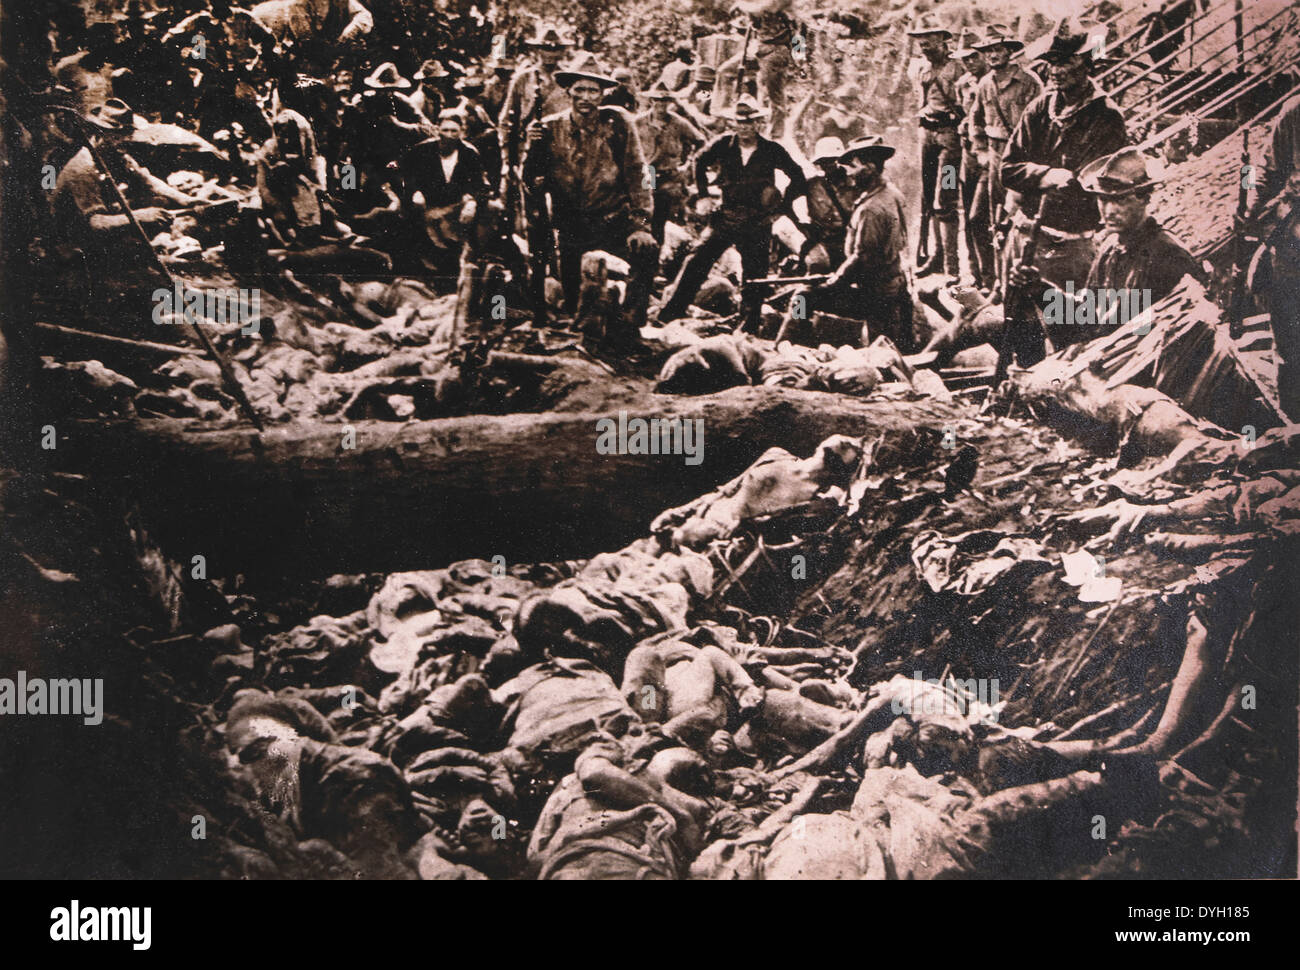 Les soldats américains voir des cadavres d'insurgés des Philippines, Philippines, vers 1900 Banque D'Images